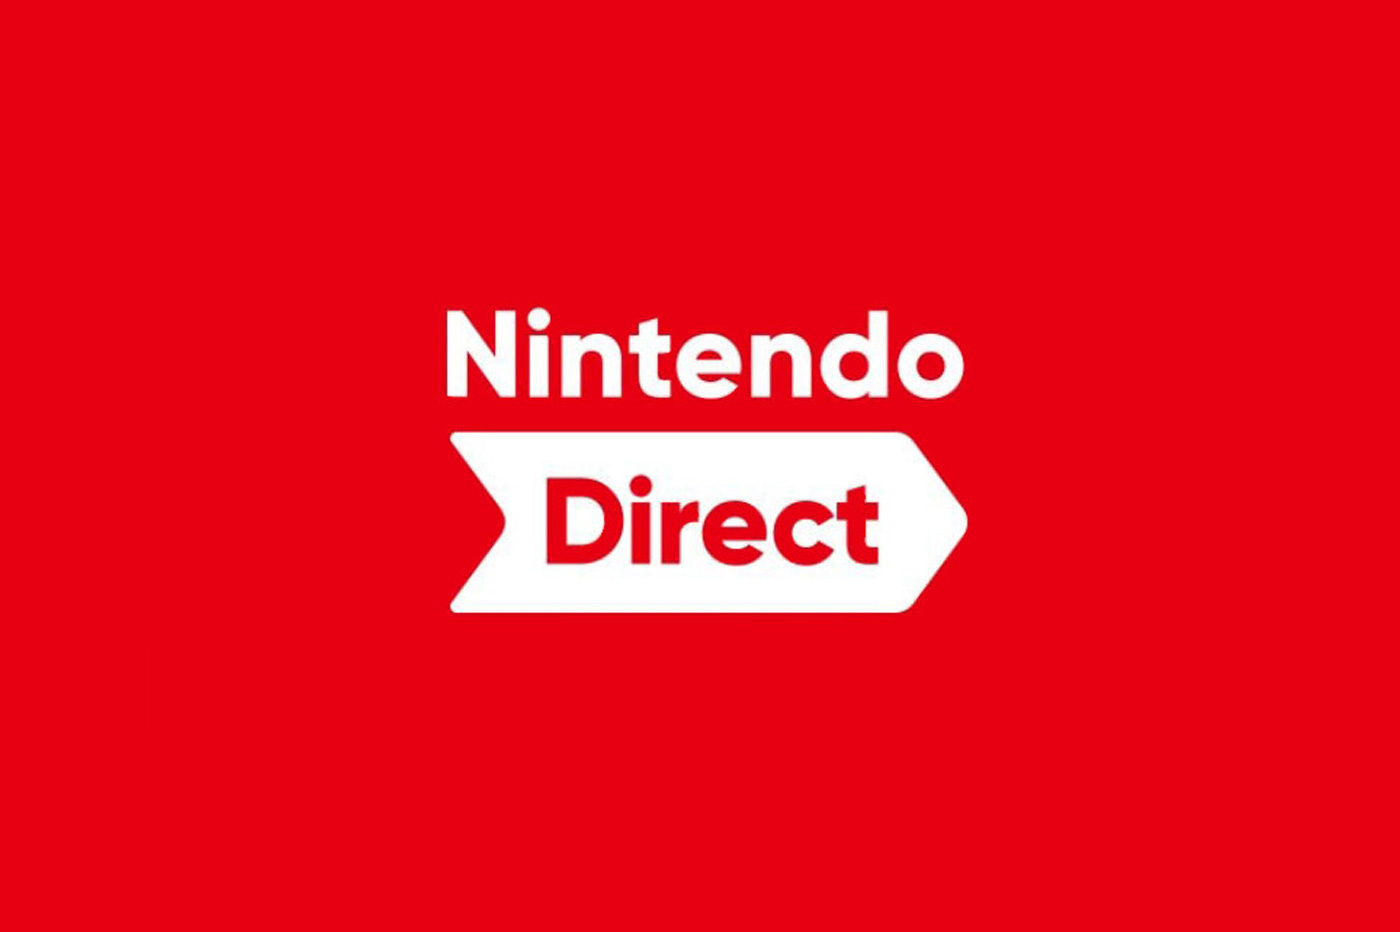 Вы сейчас просматриваете Nintendo Direct совсем близко?